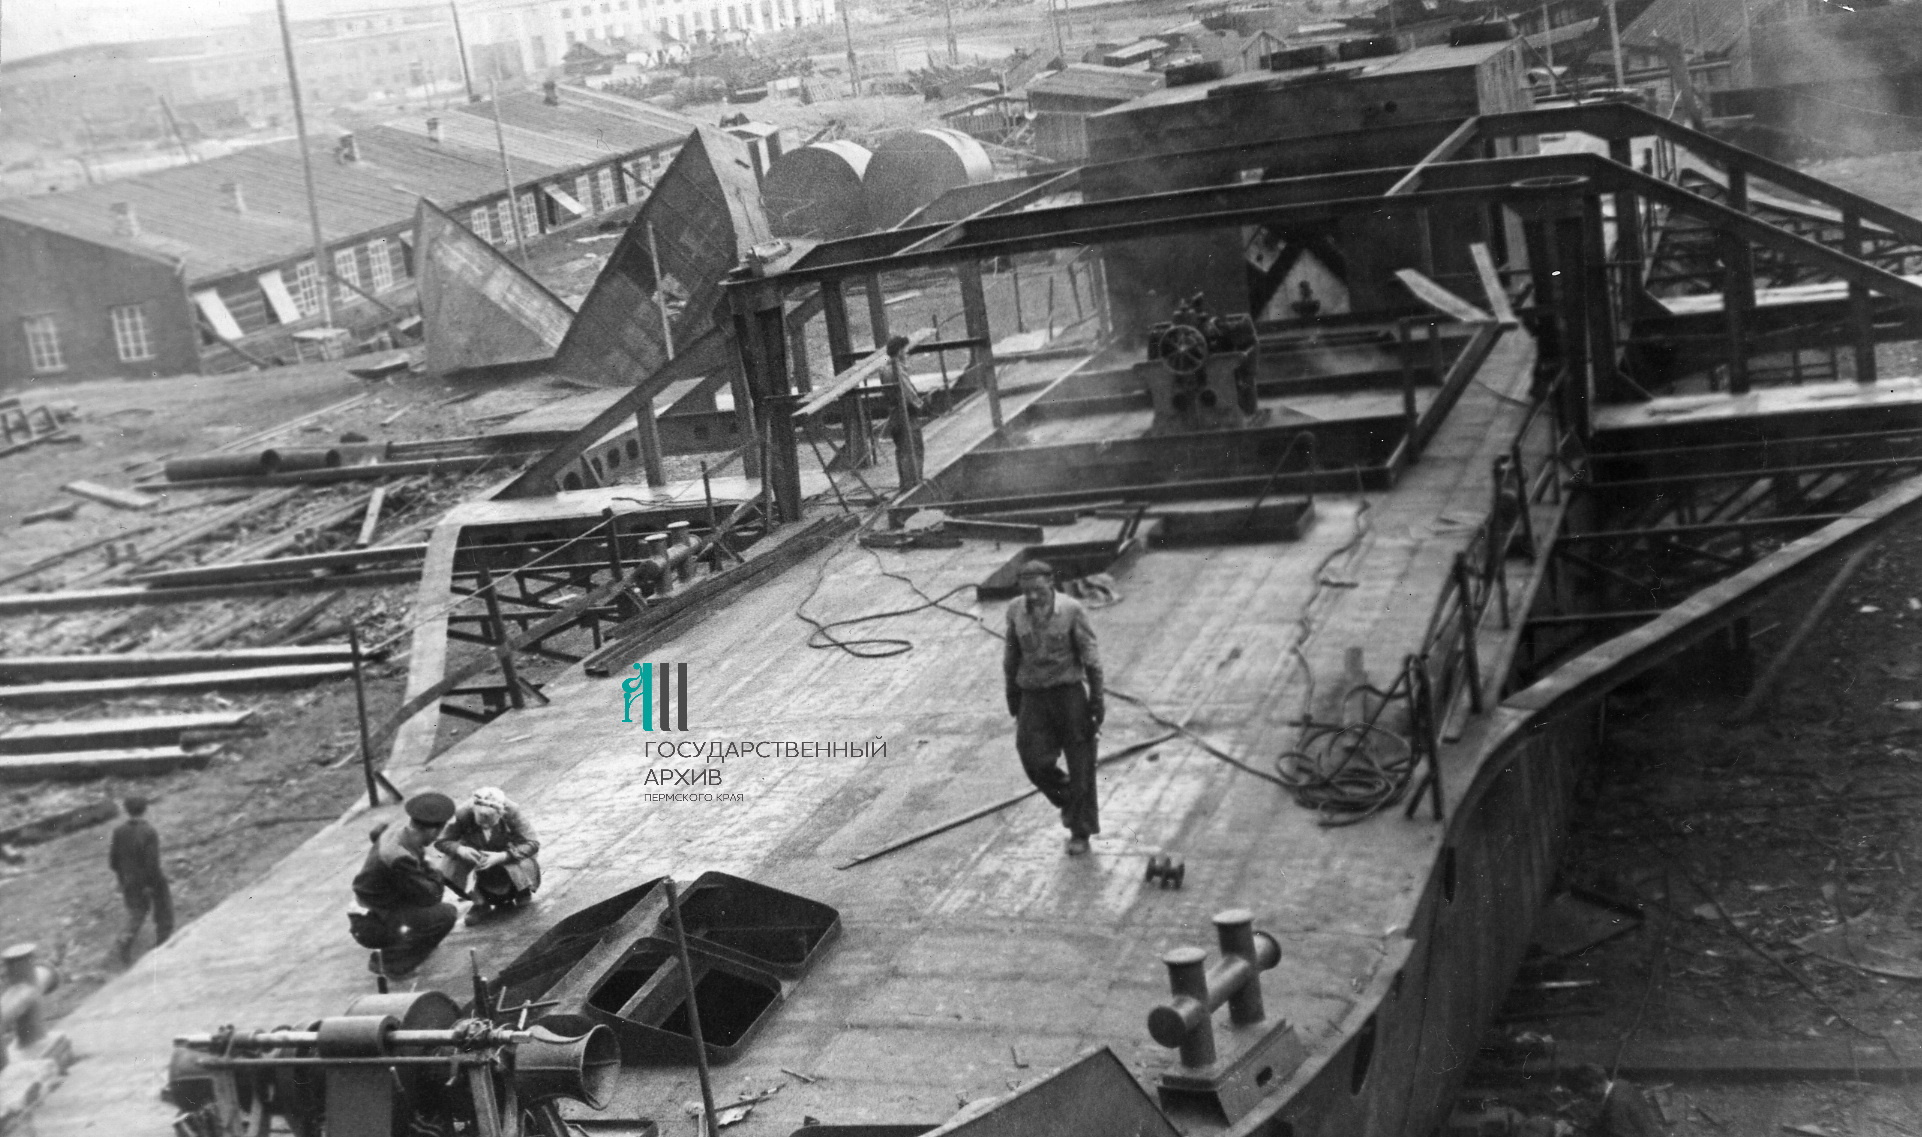 Слесари монтажно-механического цеха устанавливают паровую машину и котел в корпусе парохода, апрель 1932 года